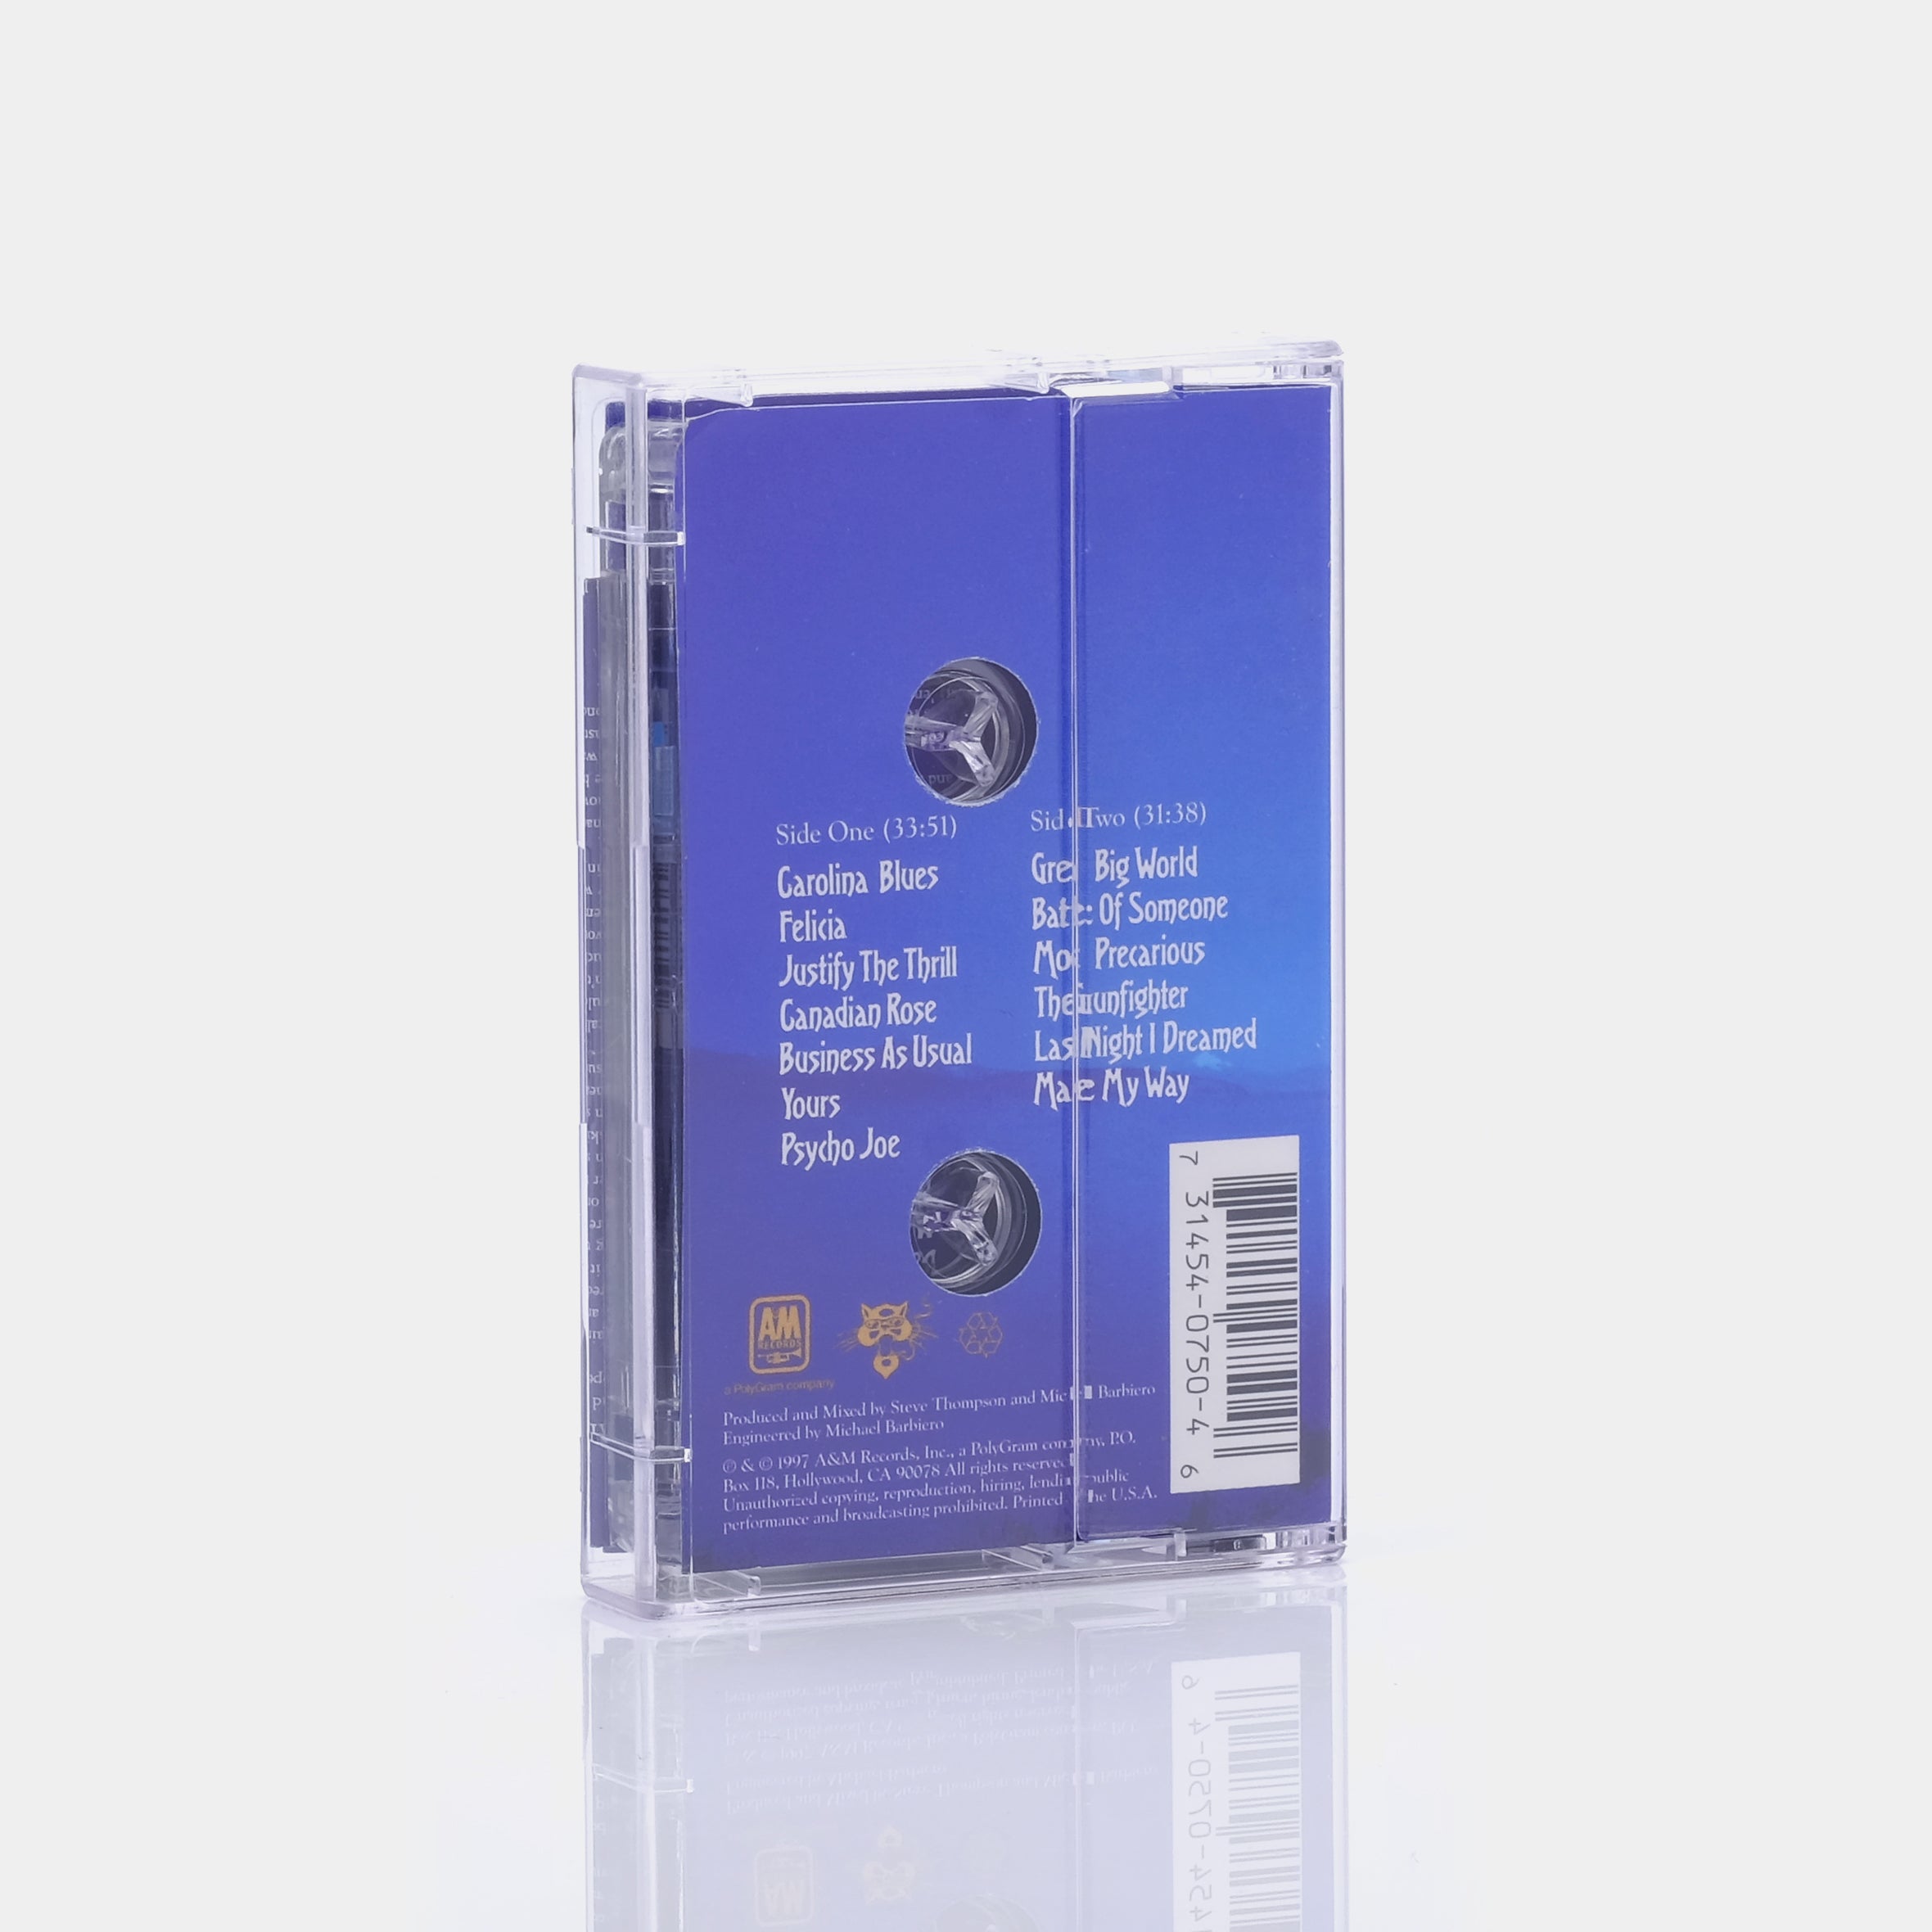 Blues Traveler - Straight On Till Morning Cassette Tape